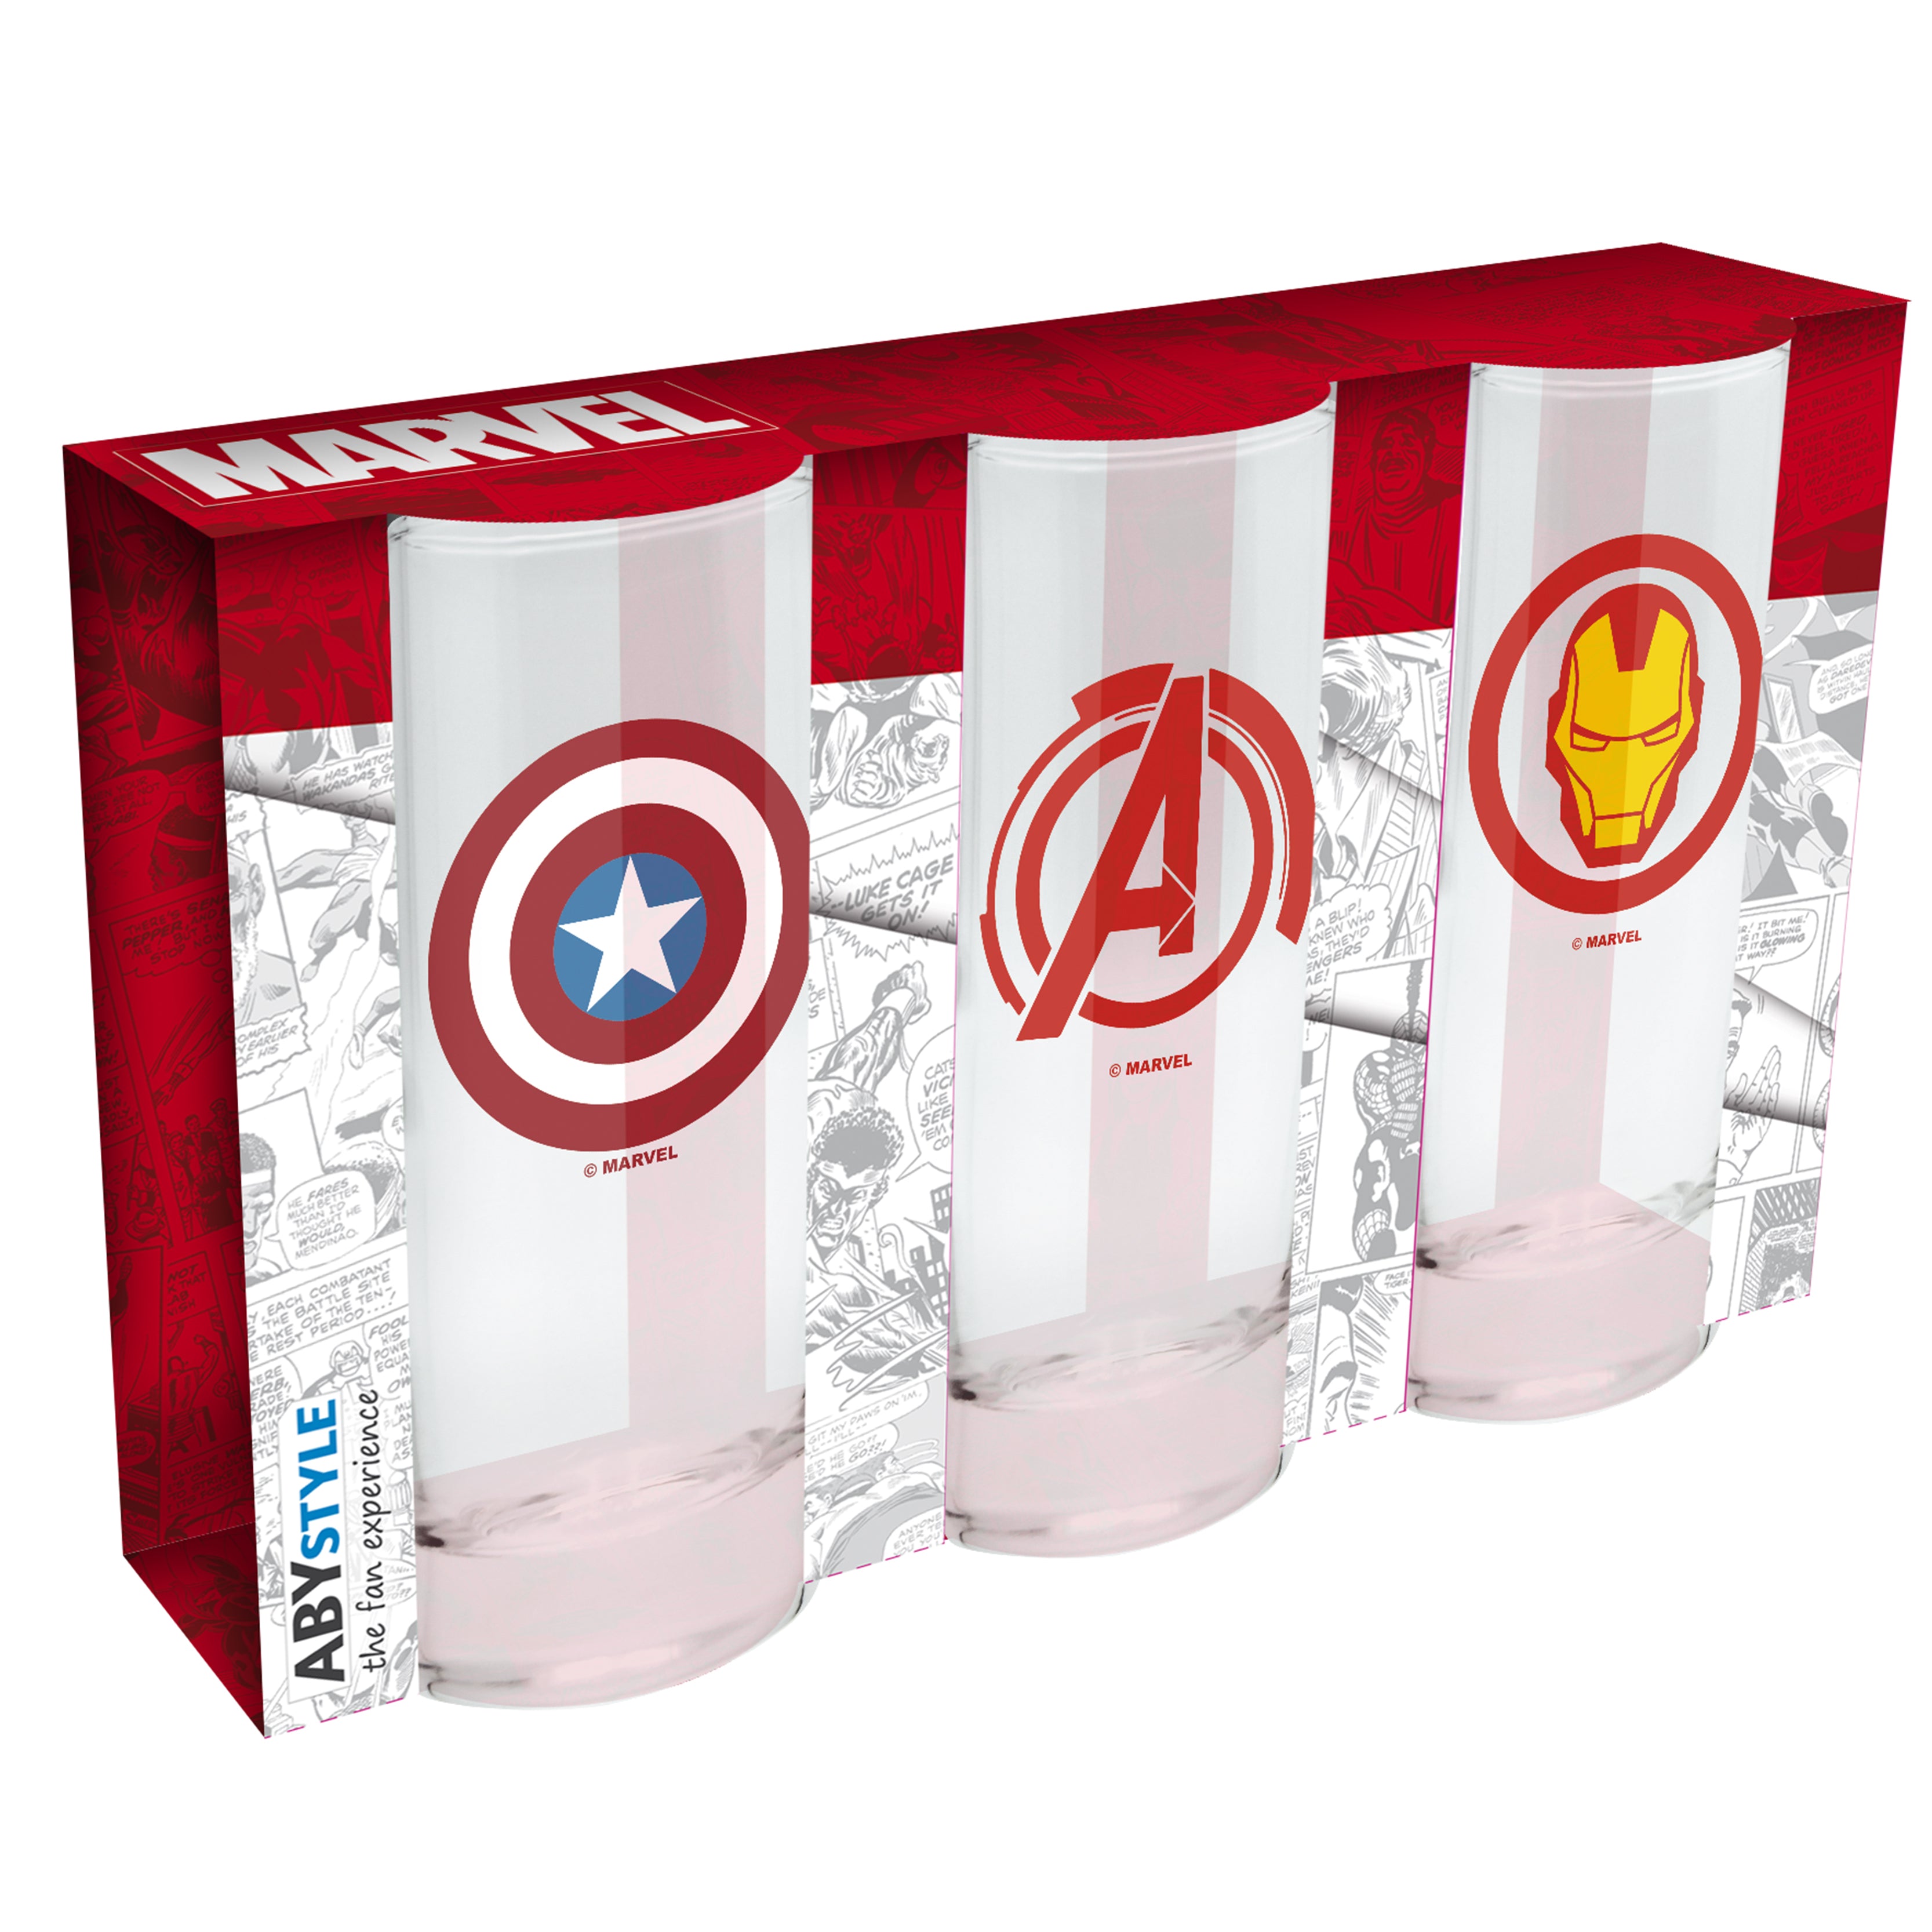 § Marvel - Set of 3 Glasses (Avengers, Captain America & Iron Man Logo)